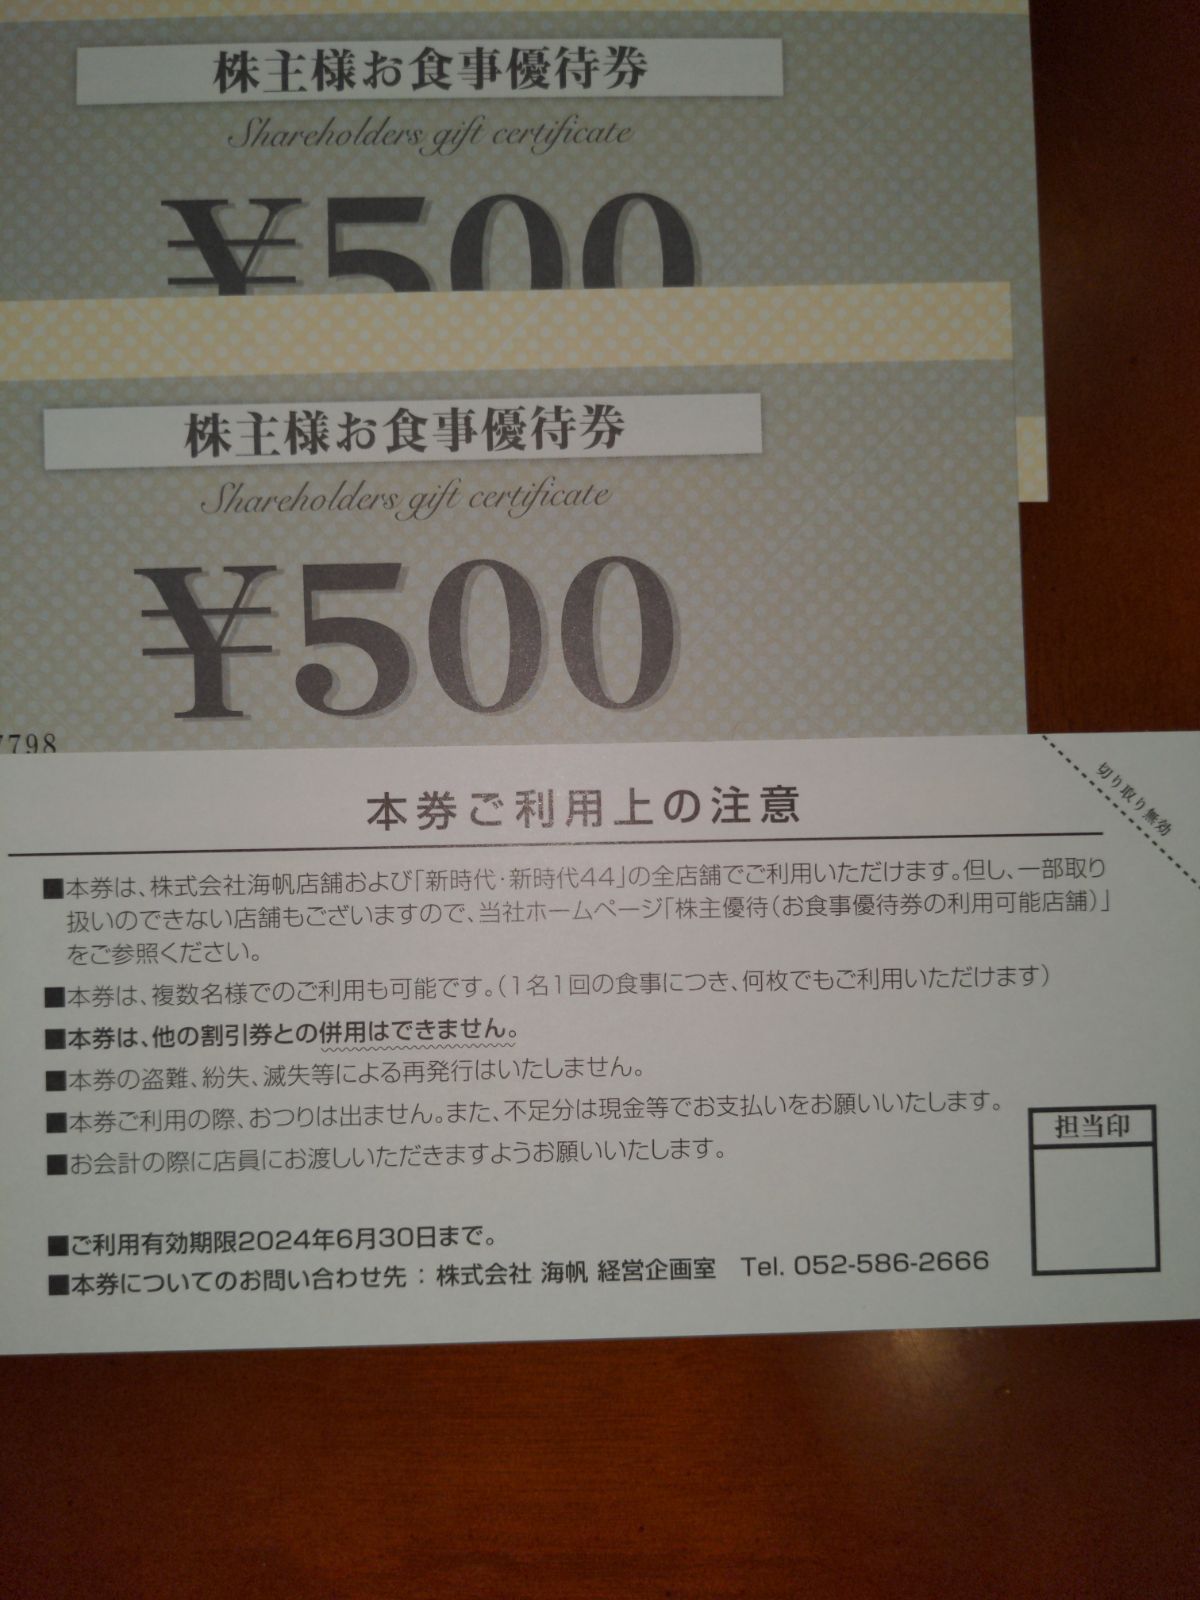 海帆 株主様お食事優待券 6000円分 - メルカリ